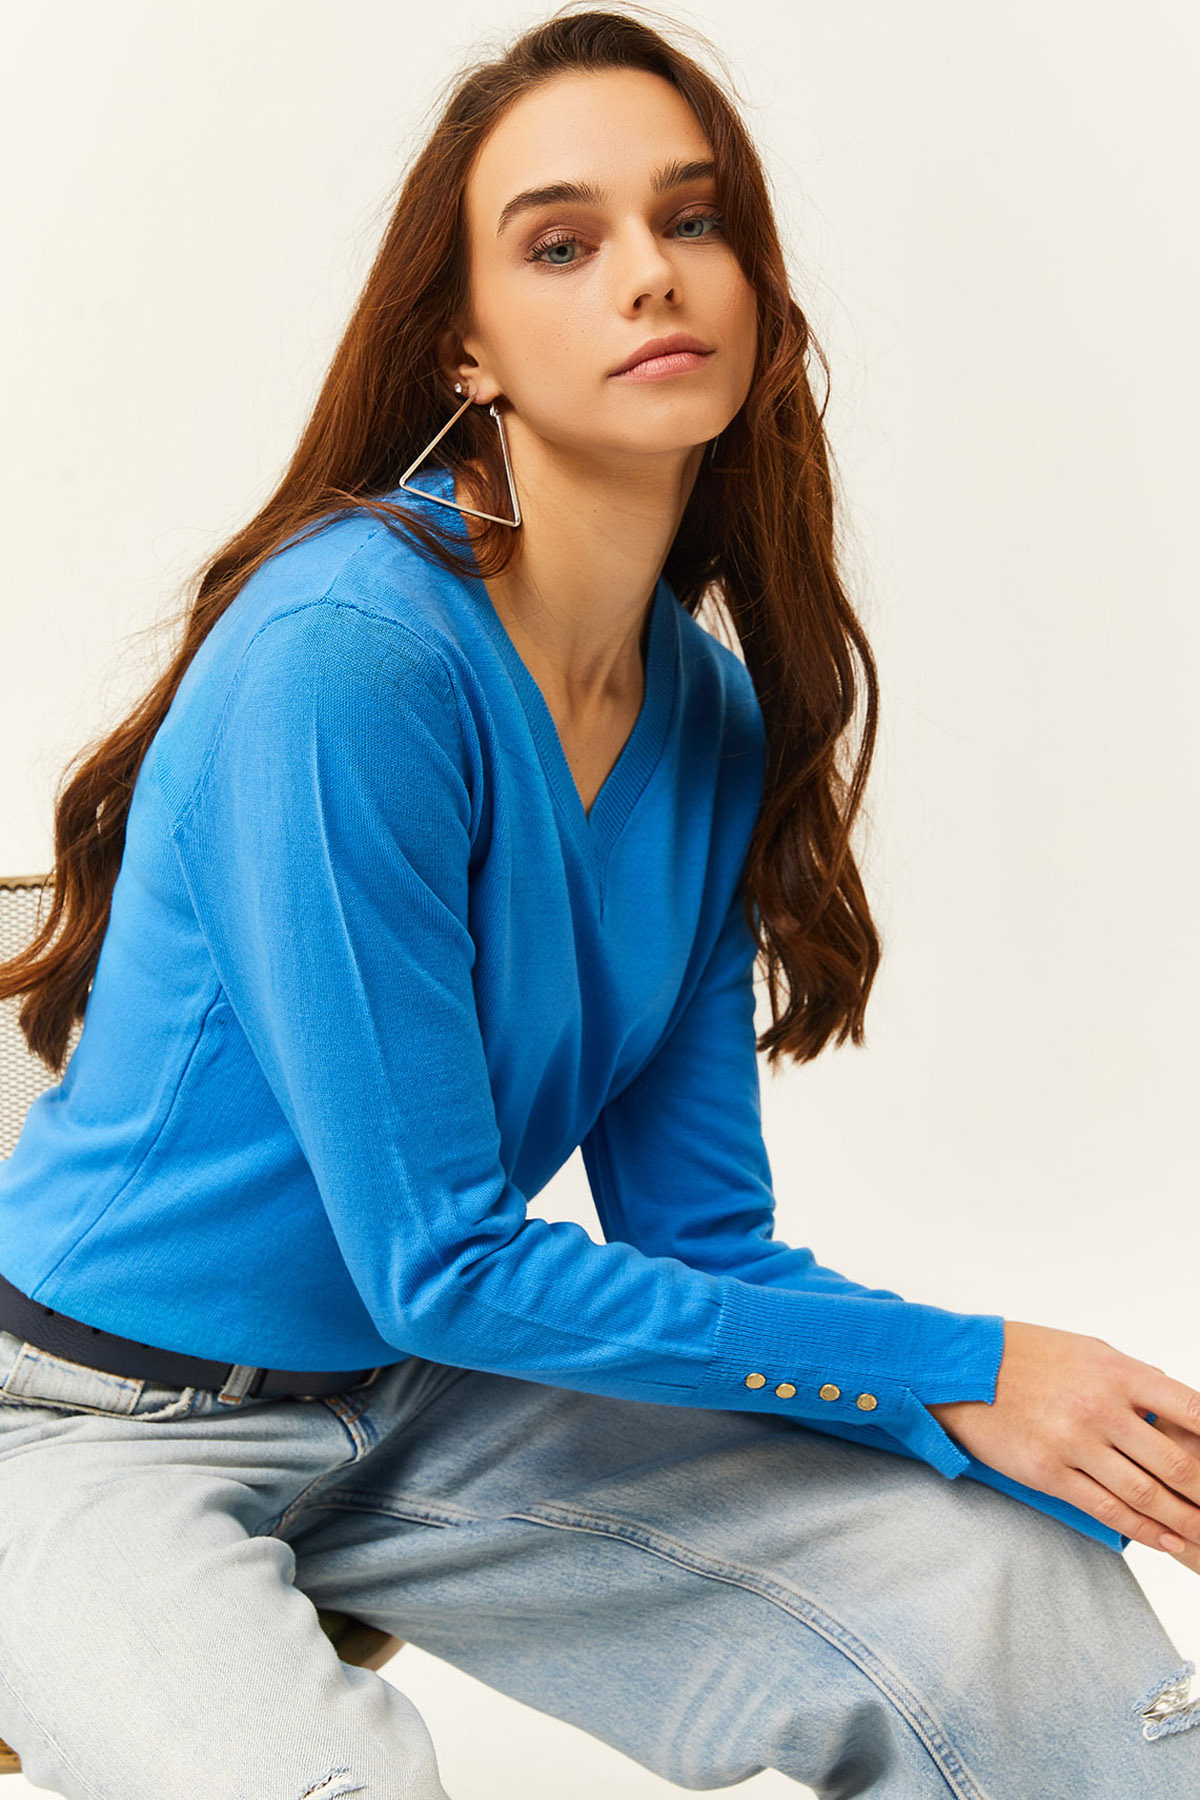 Olalook Women's Blue V-Neck Cuff Slit Buttoned Knitwear Sweater